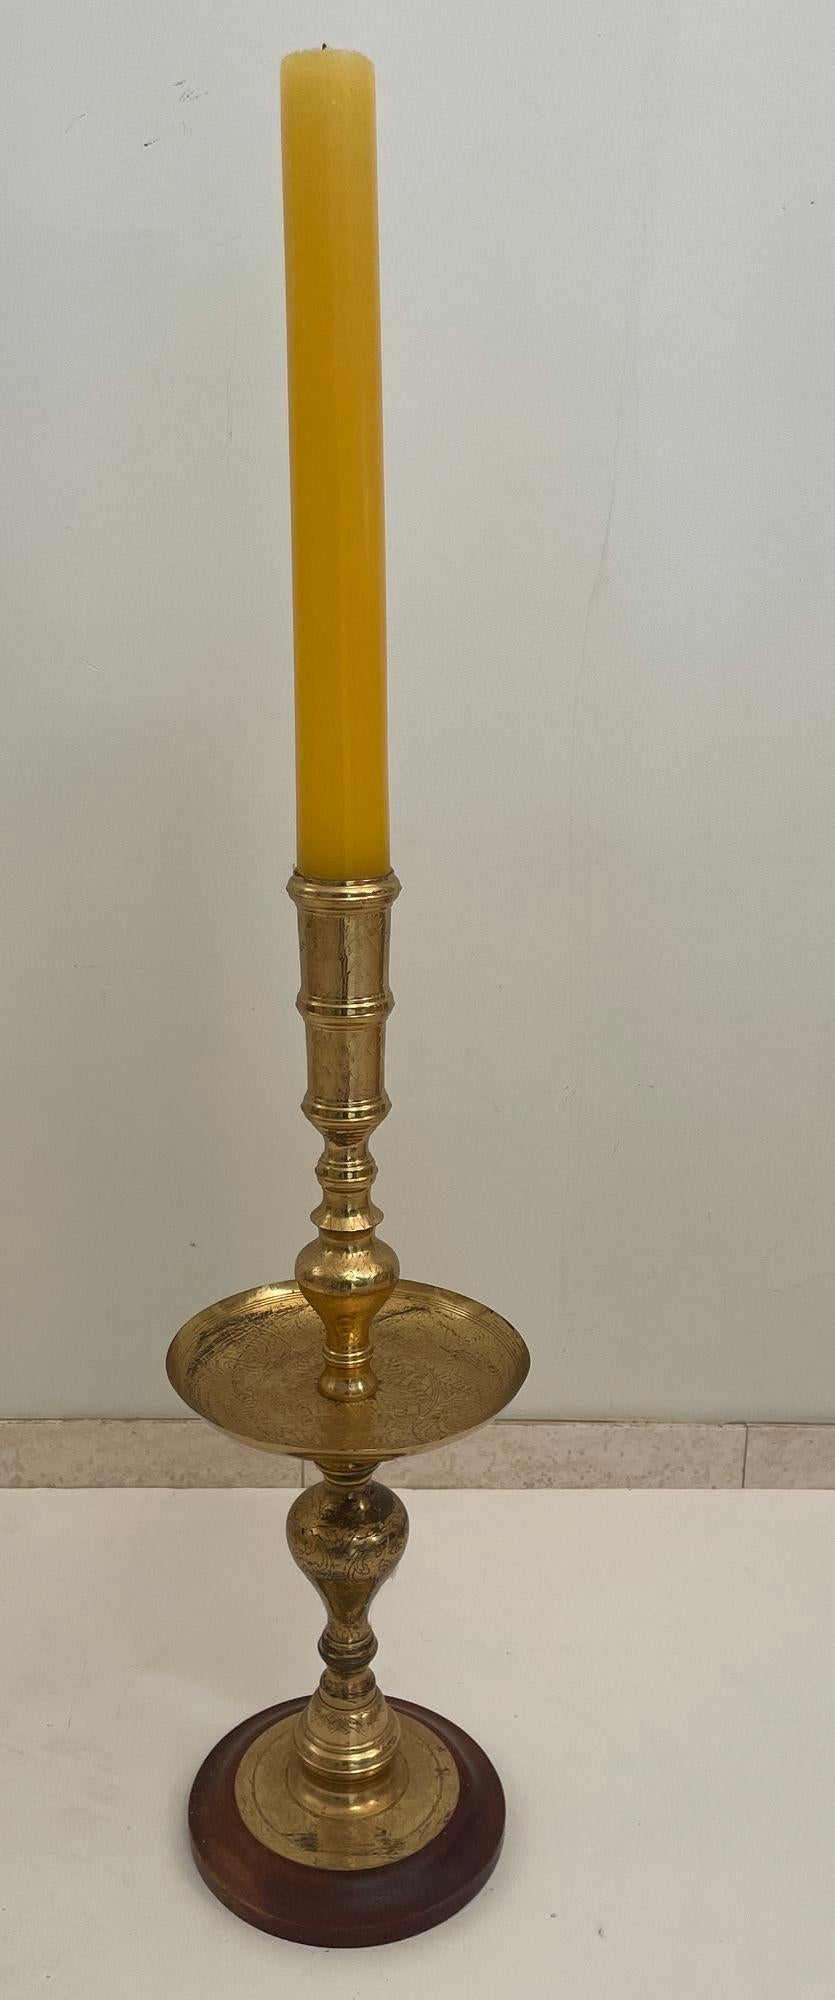 Vintage poliertem Messing marokkanischen Säule Kerzenständer 1950er Jahre.
Vintage marokkanischen Altar geätzten Messing Kerzenhalter, Säule Kerzenhalter.
Handgefertigter hoher marokkanischer Kerzenhalter aus poliertem Messing auf einem